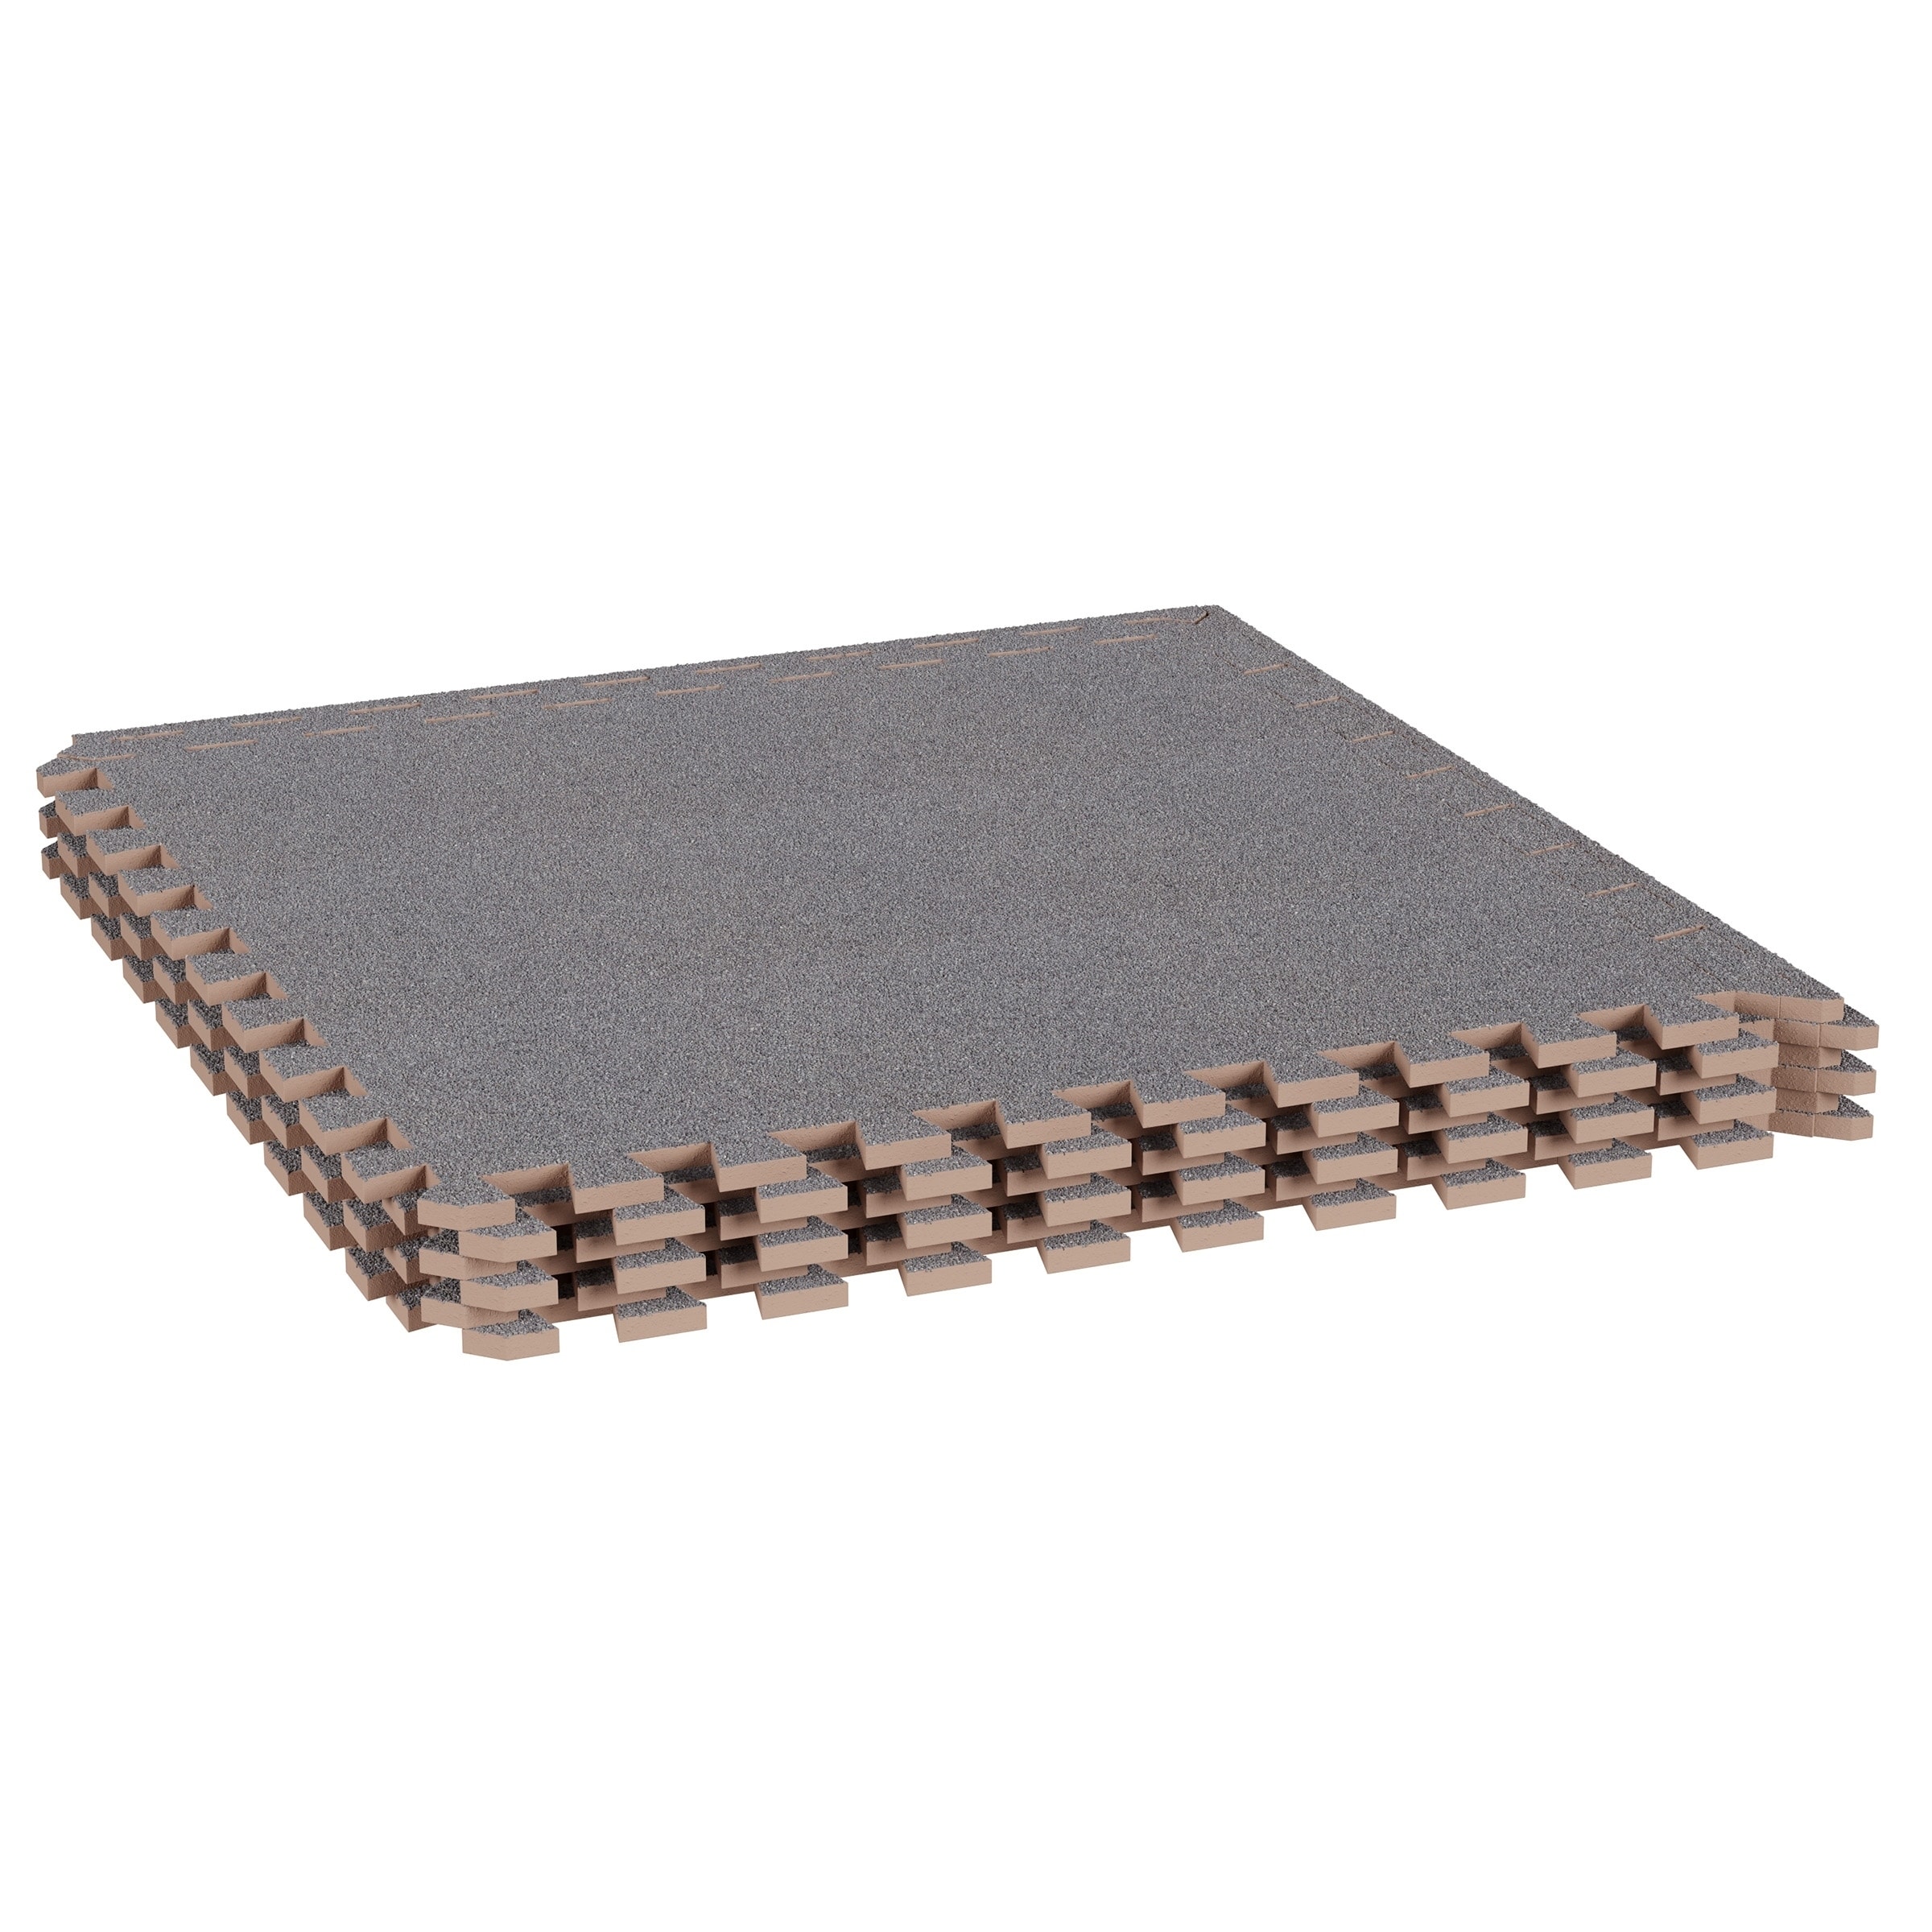 12 Tiles Wood Grain Foam Floor Mats with Borders - Costway